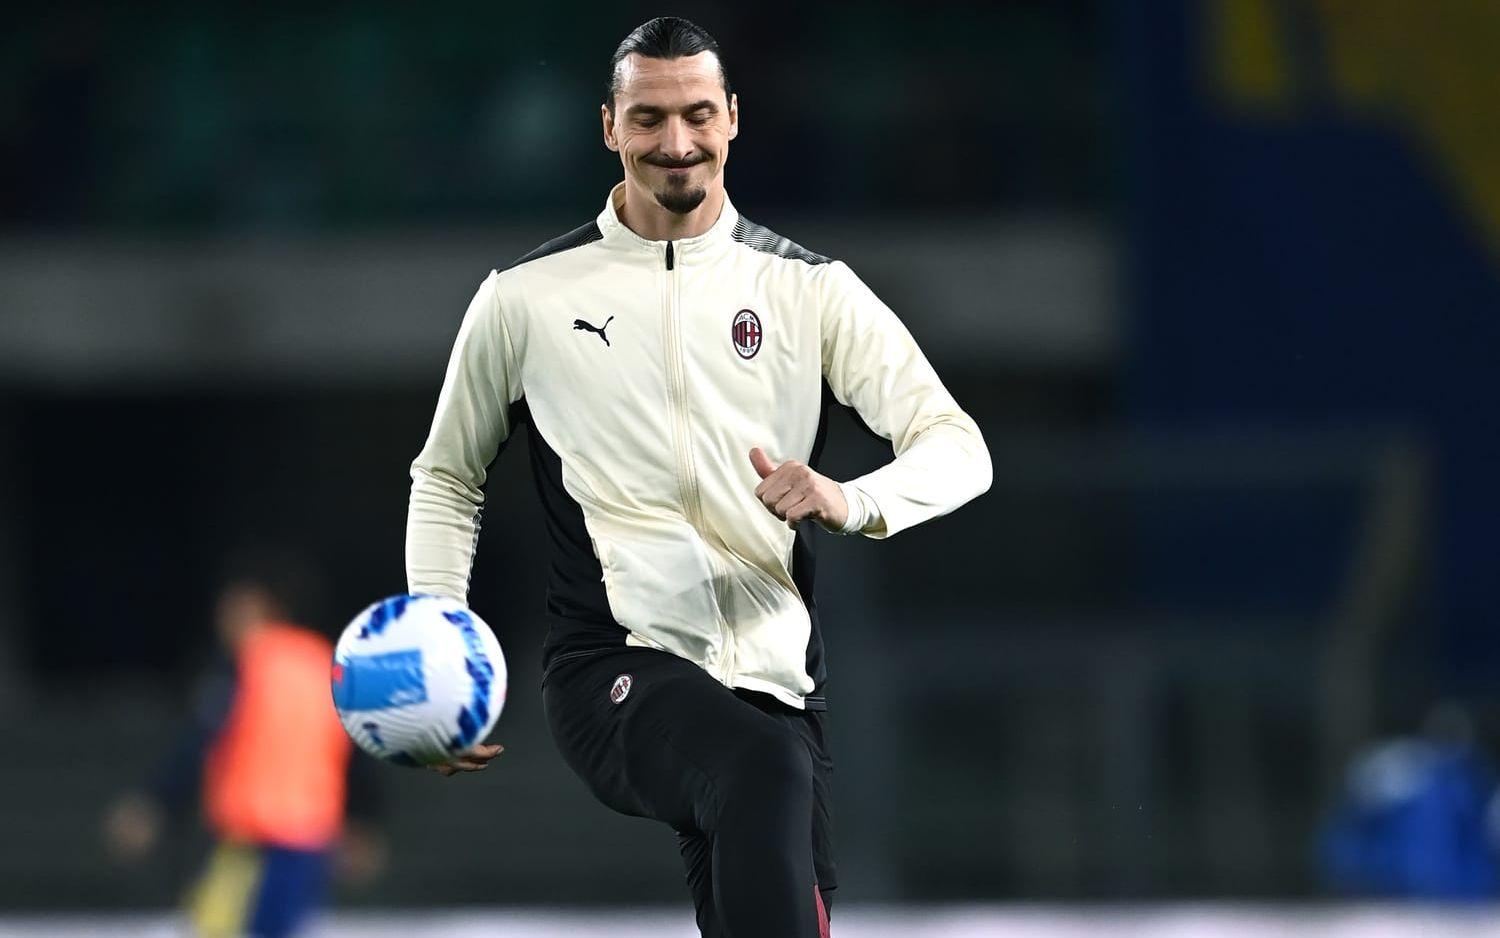 Den senaste säsongen har varit präglad av skador för Zlatan. 